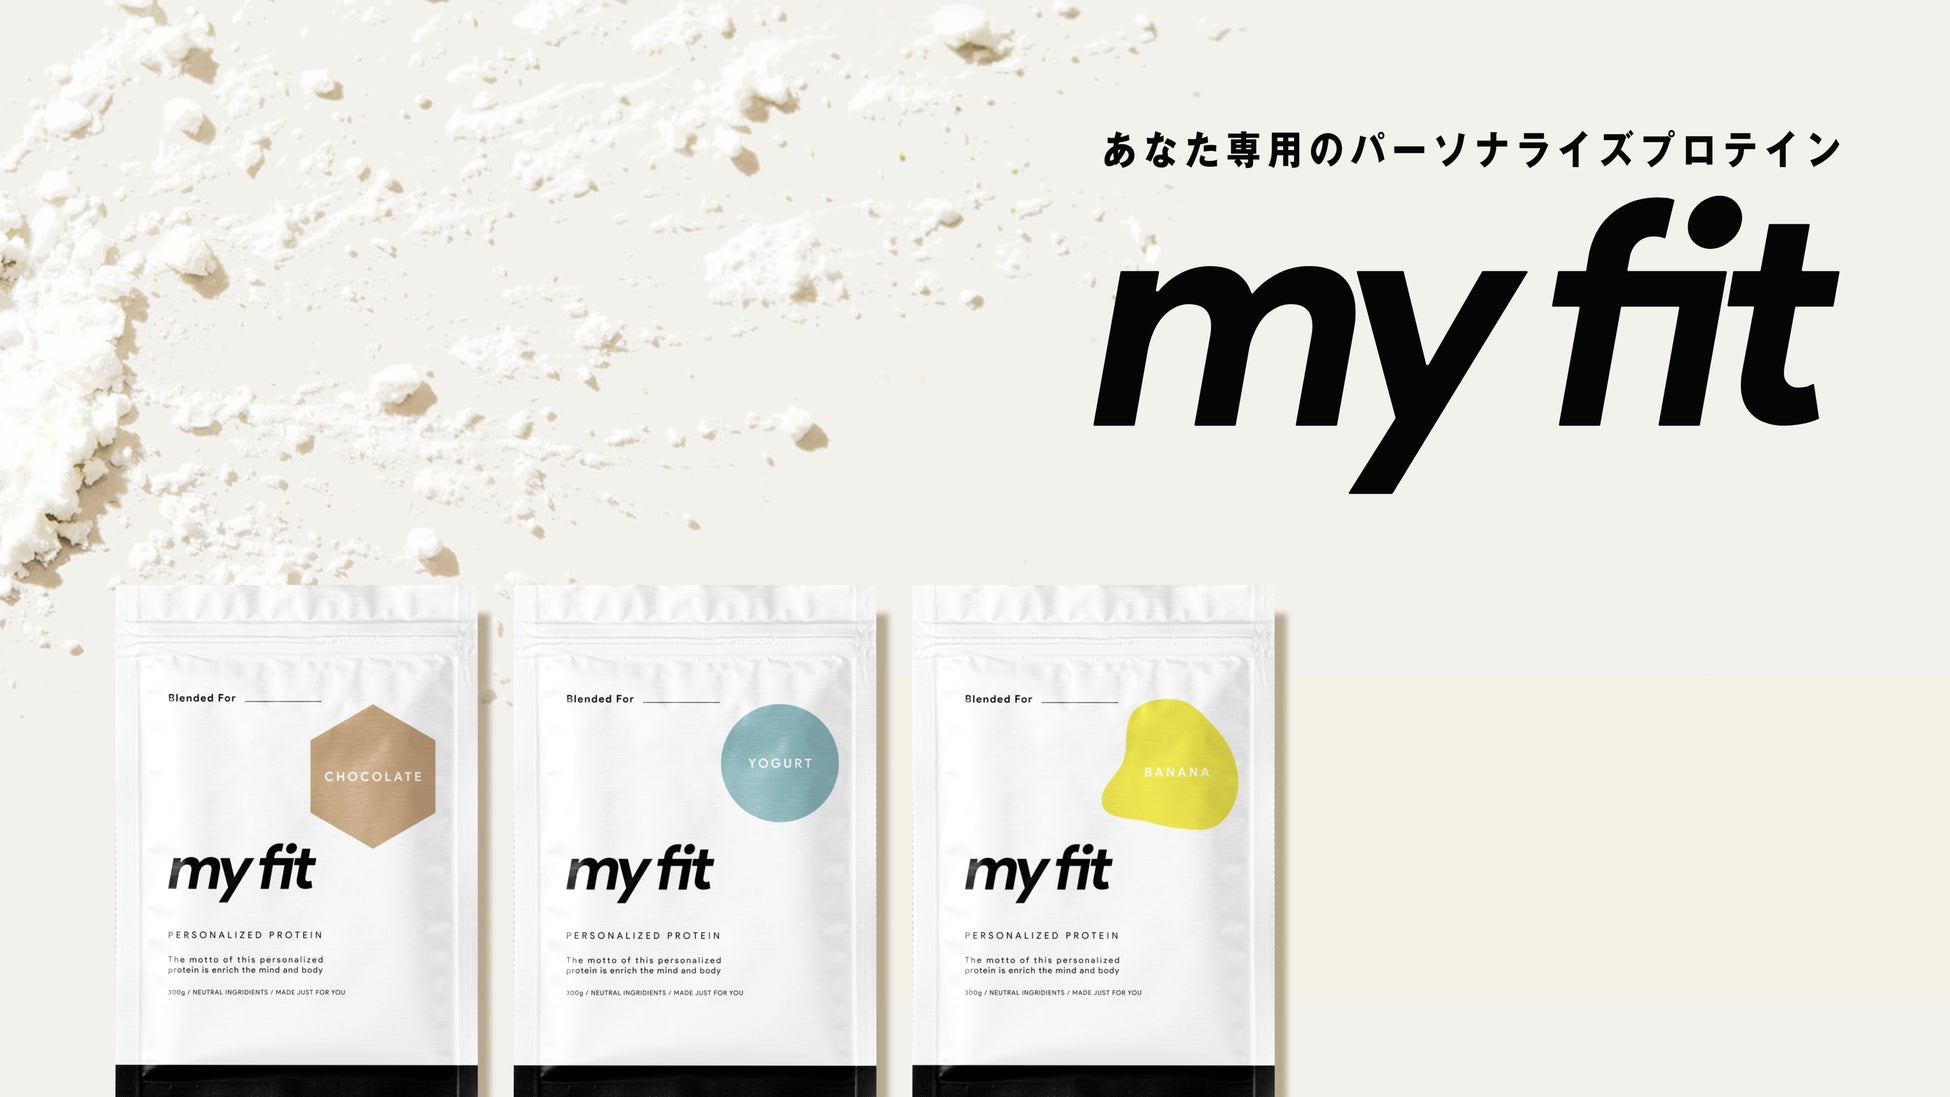 パーソナライズプロテイン”myfit”が3月9日〜3月18日に上野マルイでPOPUPSHOPを出店